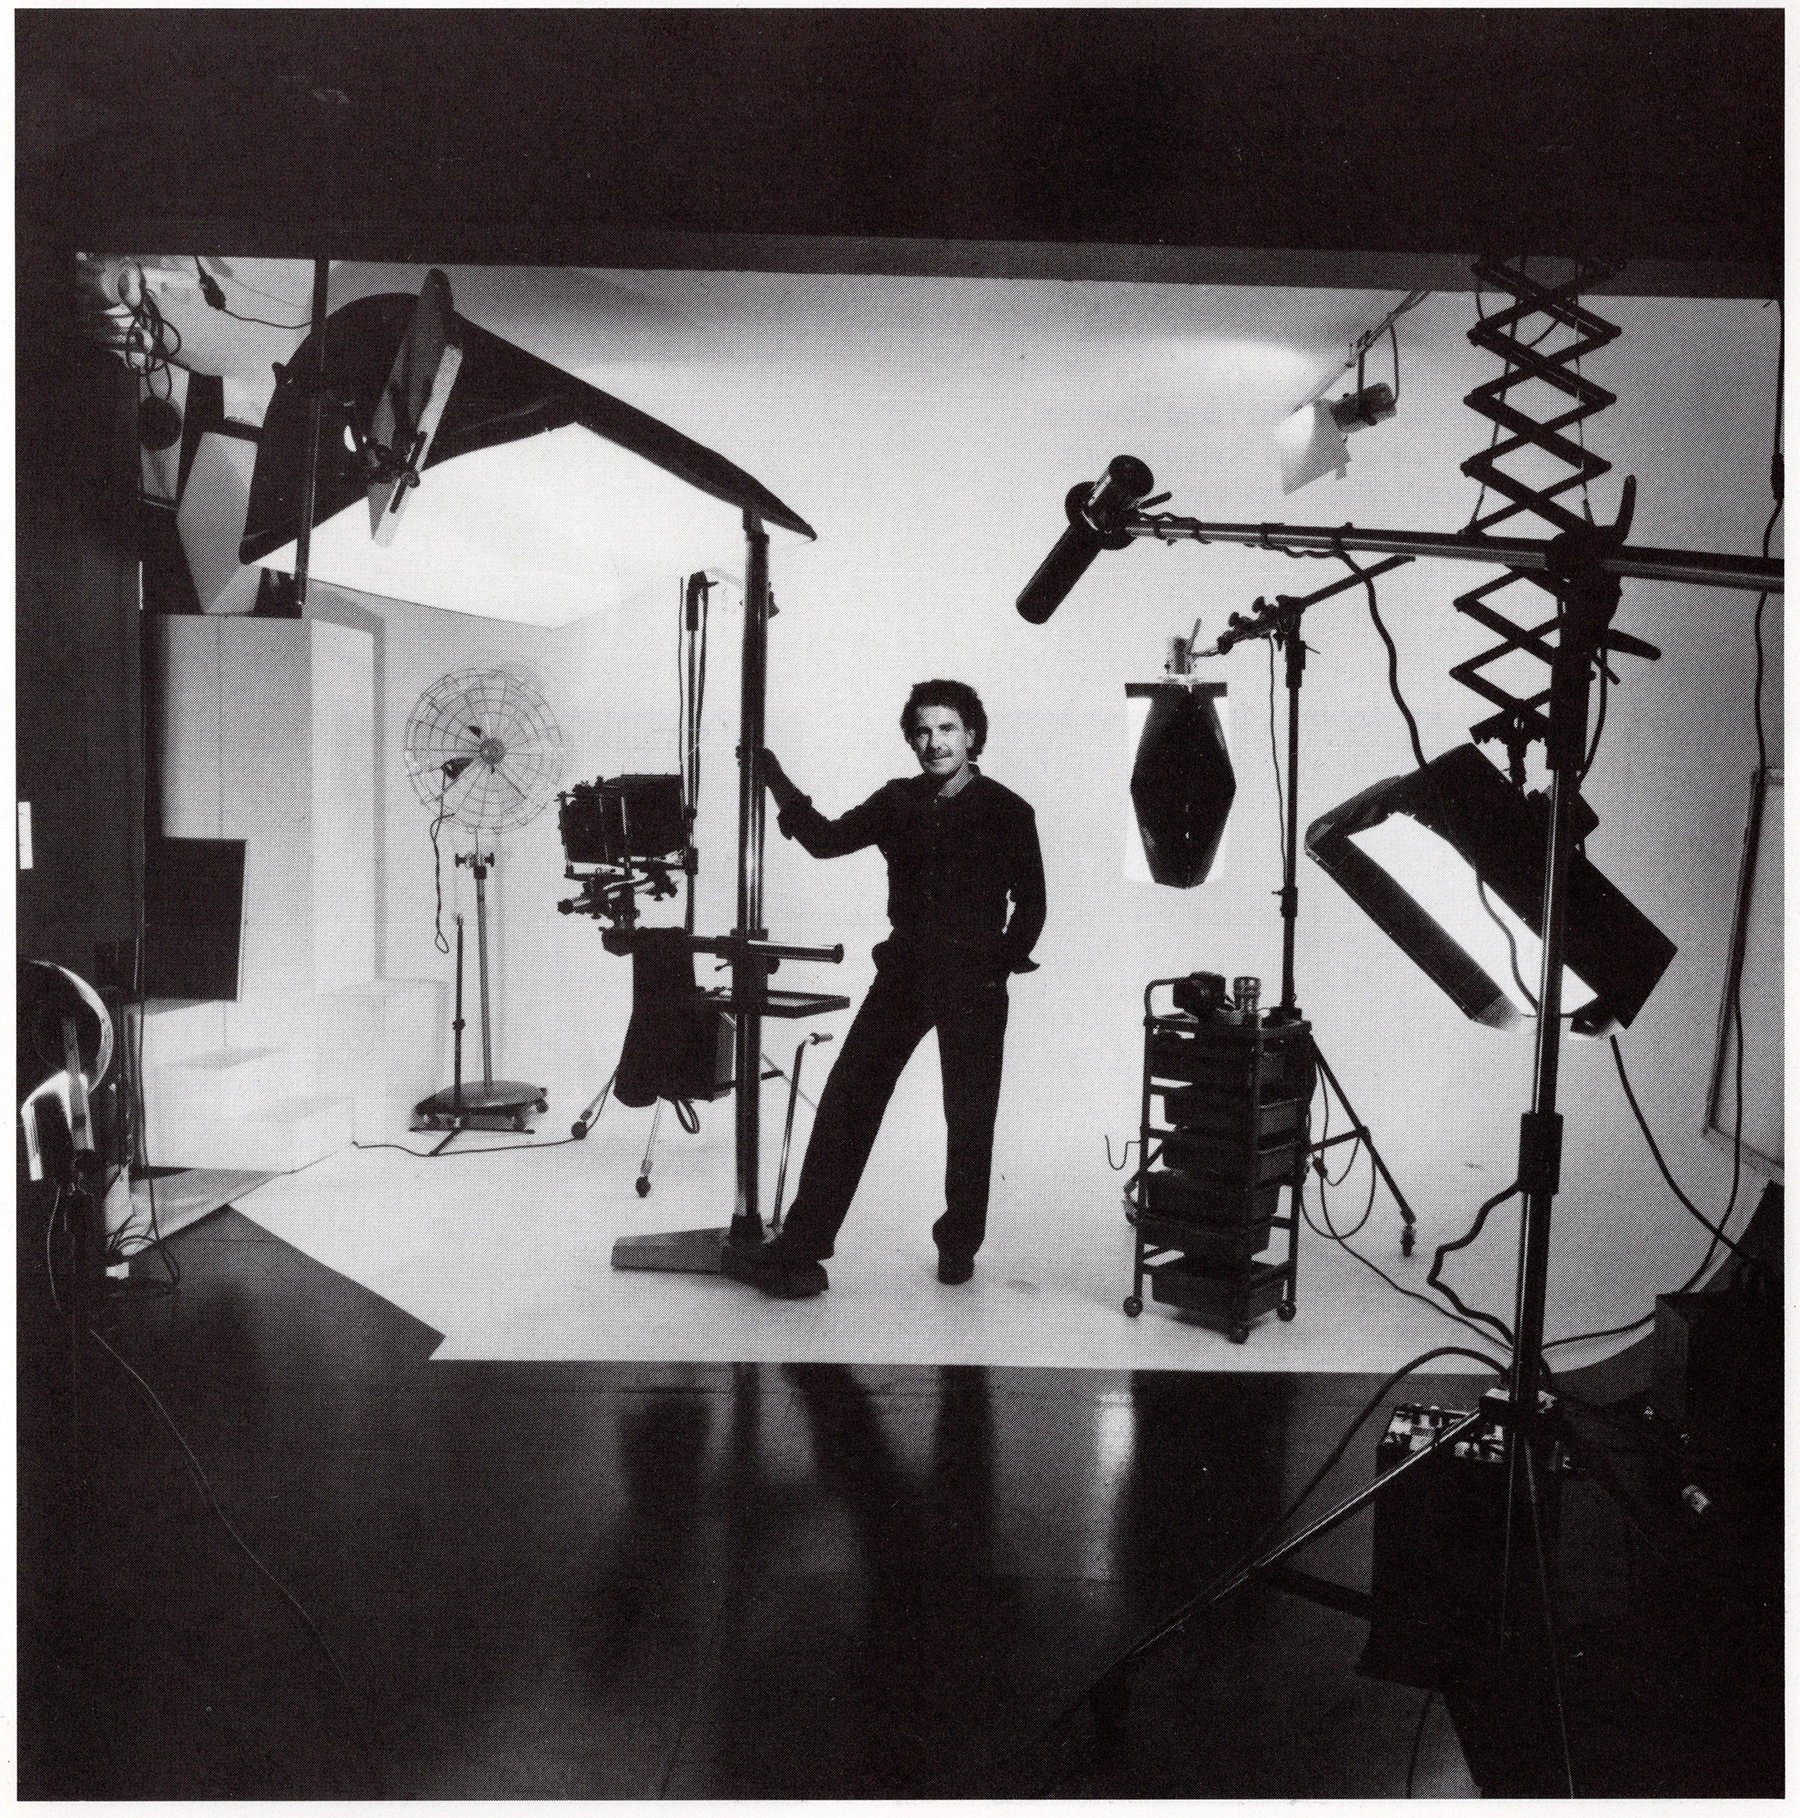 Unbekannt, Joachim Giesel in seinem Studio in der Plathnerstraße, ca. 1980.